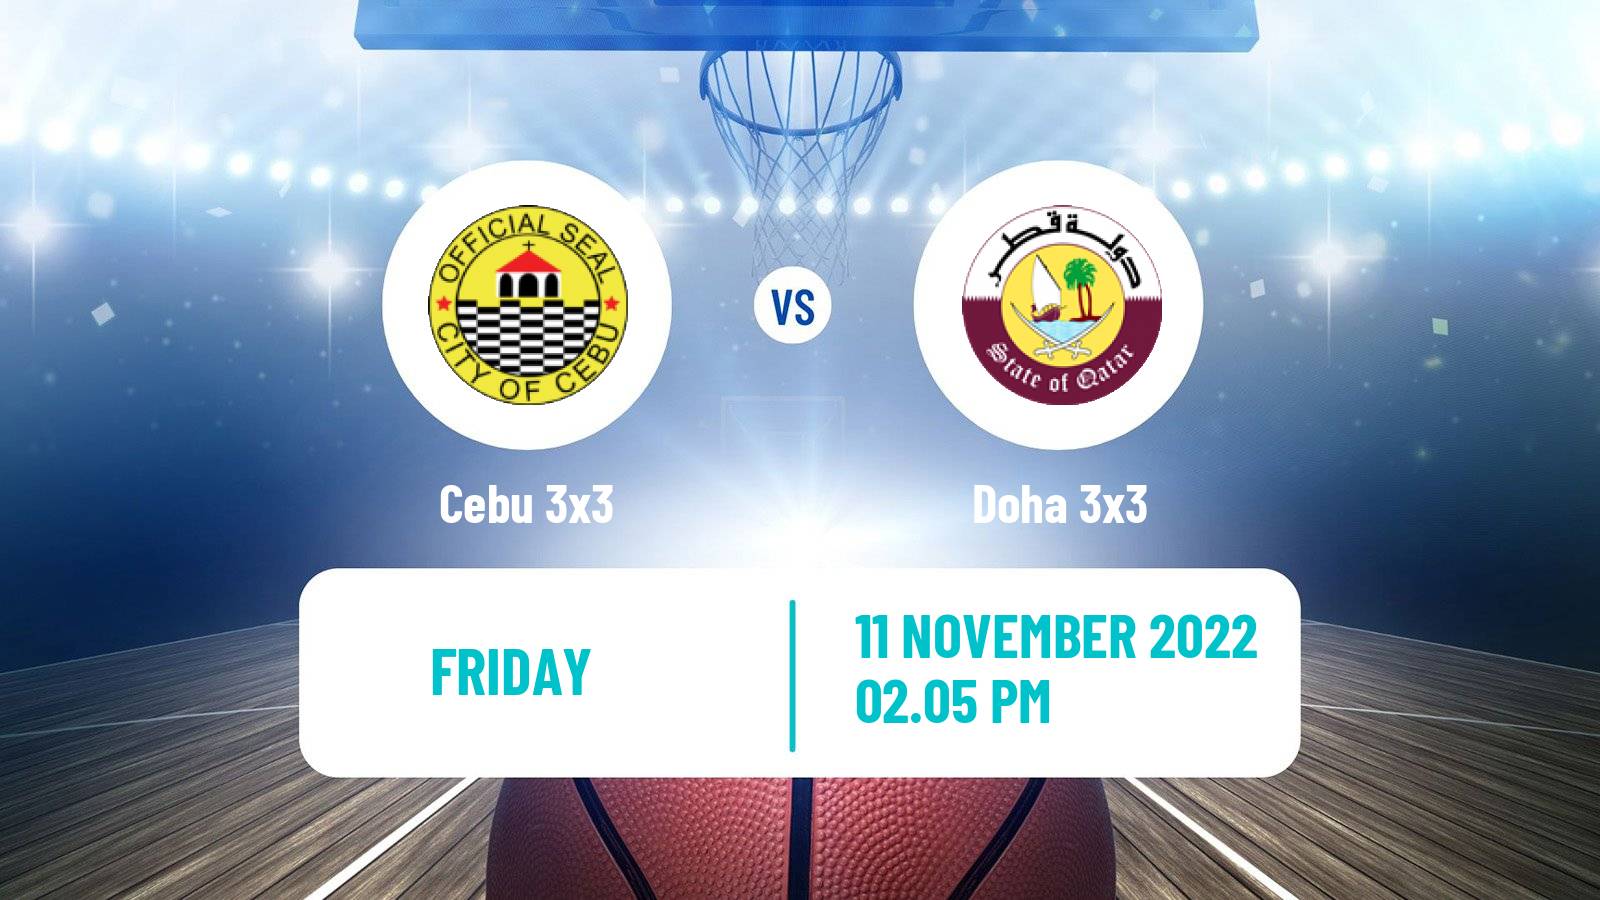 Basketball World Tour Riyadh 3x3 Cebu 3x3 - Doha 3x3